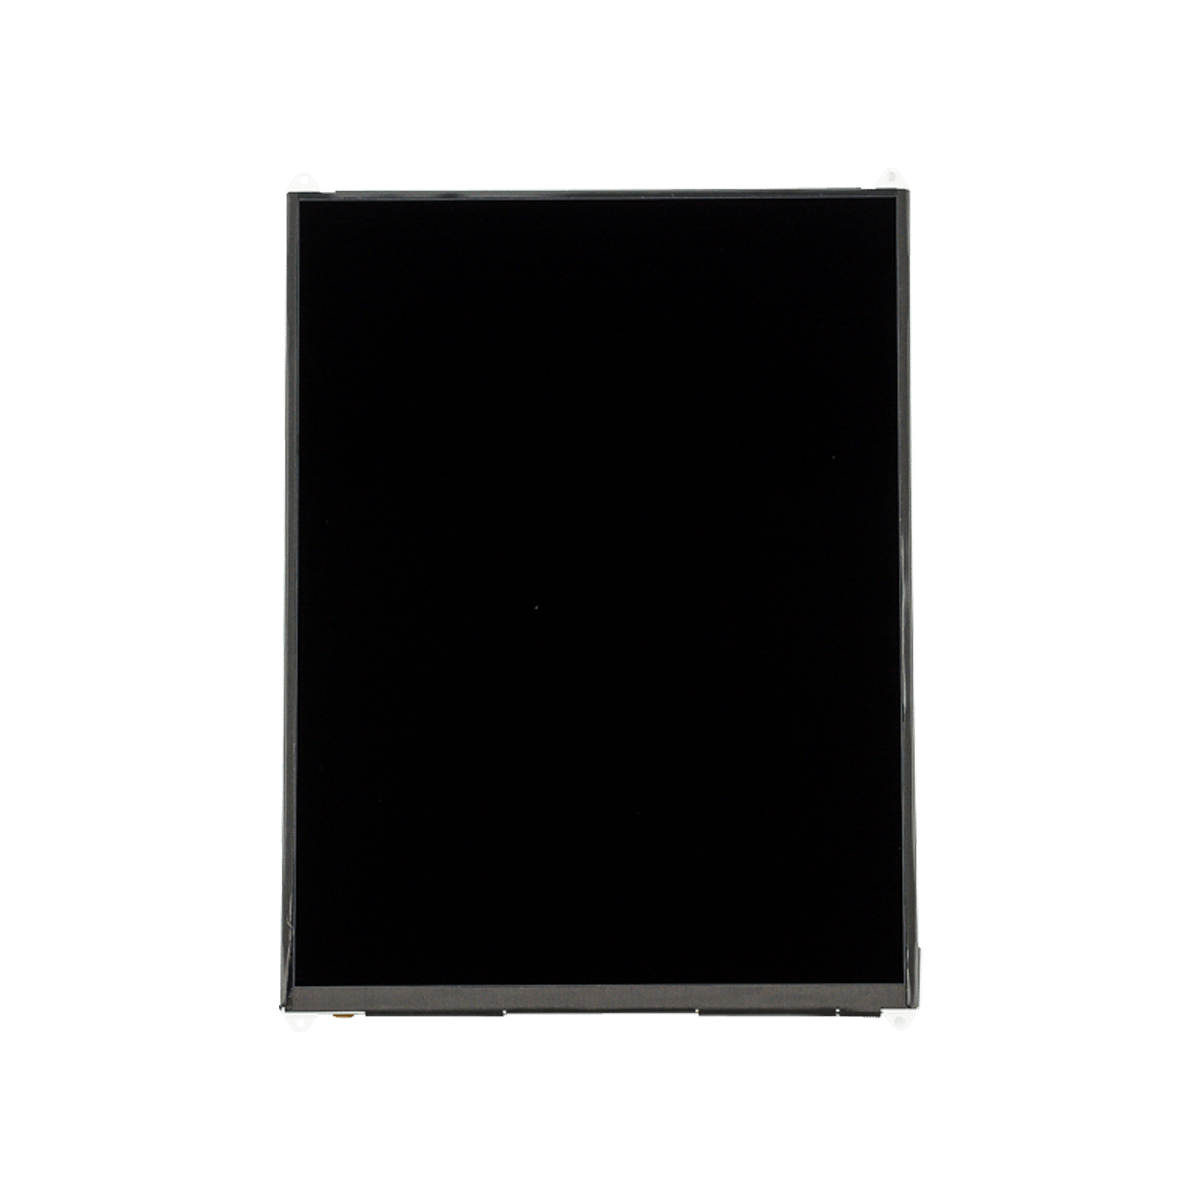 iPad Mini 2 / 3 LCD Screen Replacement